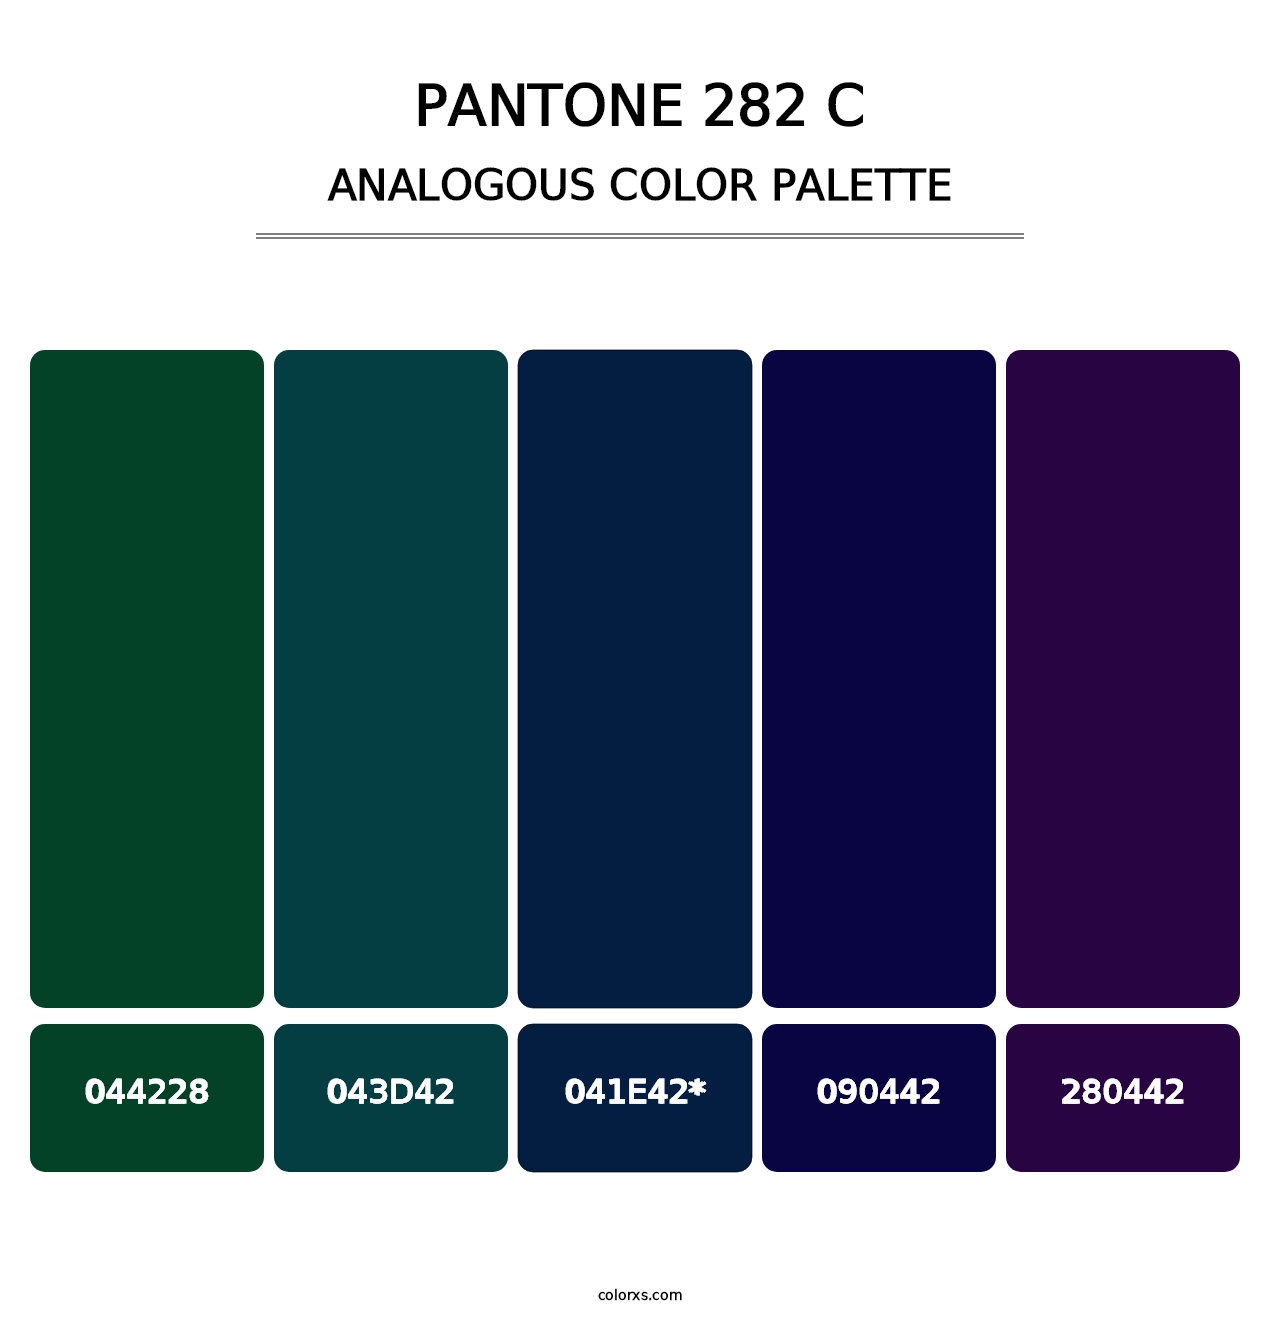 PANTONE 282 C - Analogous Color Palette